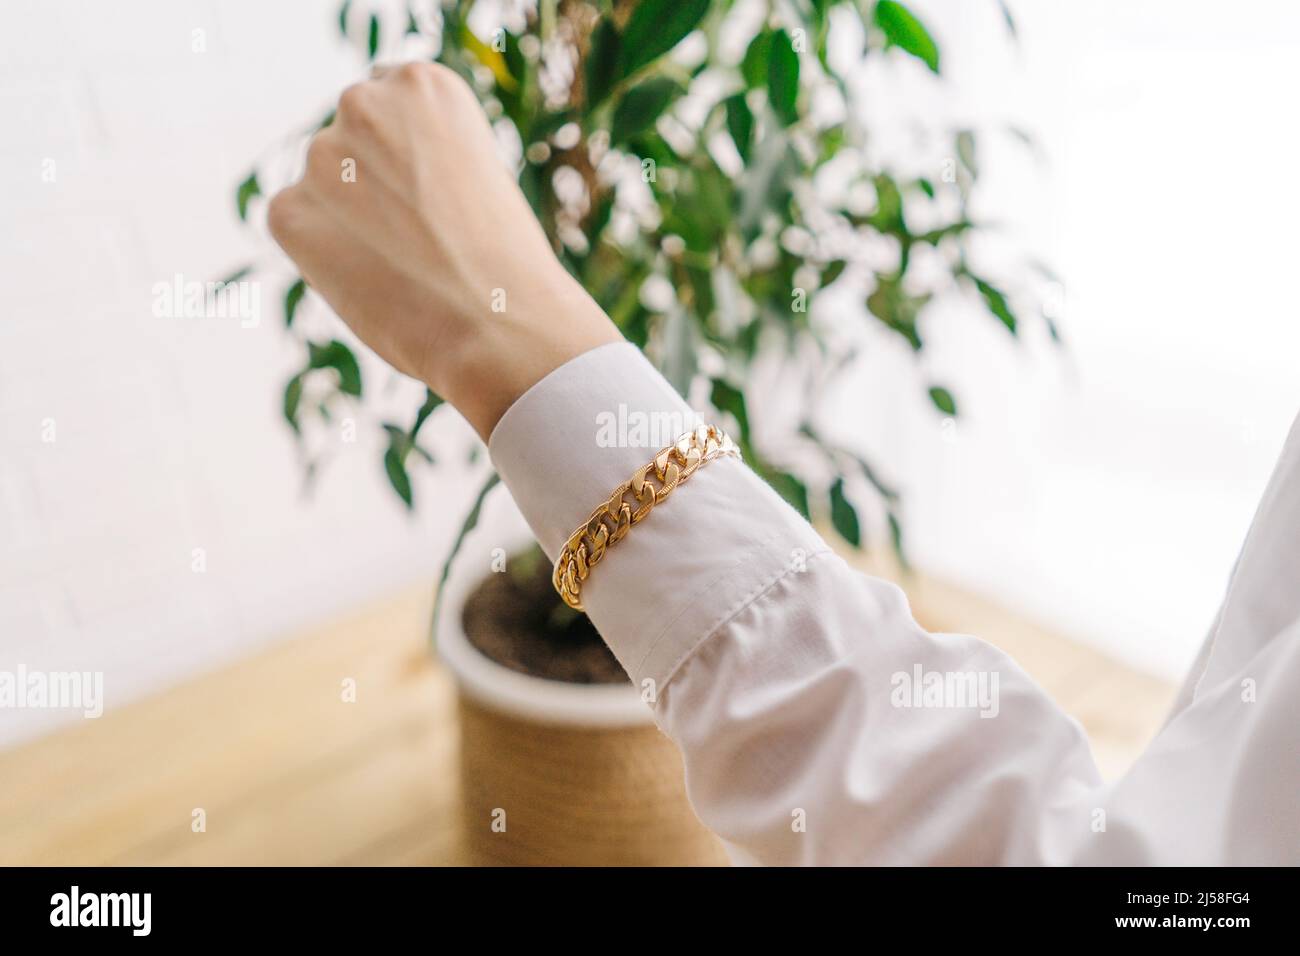 Bracelet de bijouterie doré de la chaîne sur la main de femme. Fond blanc avec plante verte. Banque D'Images